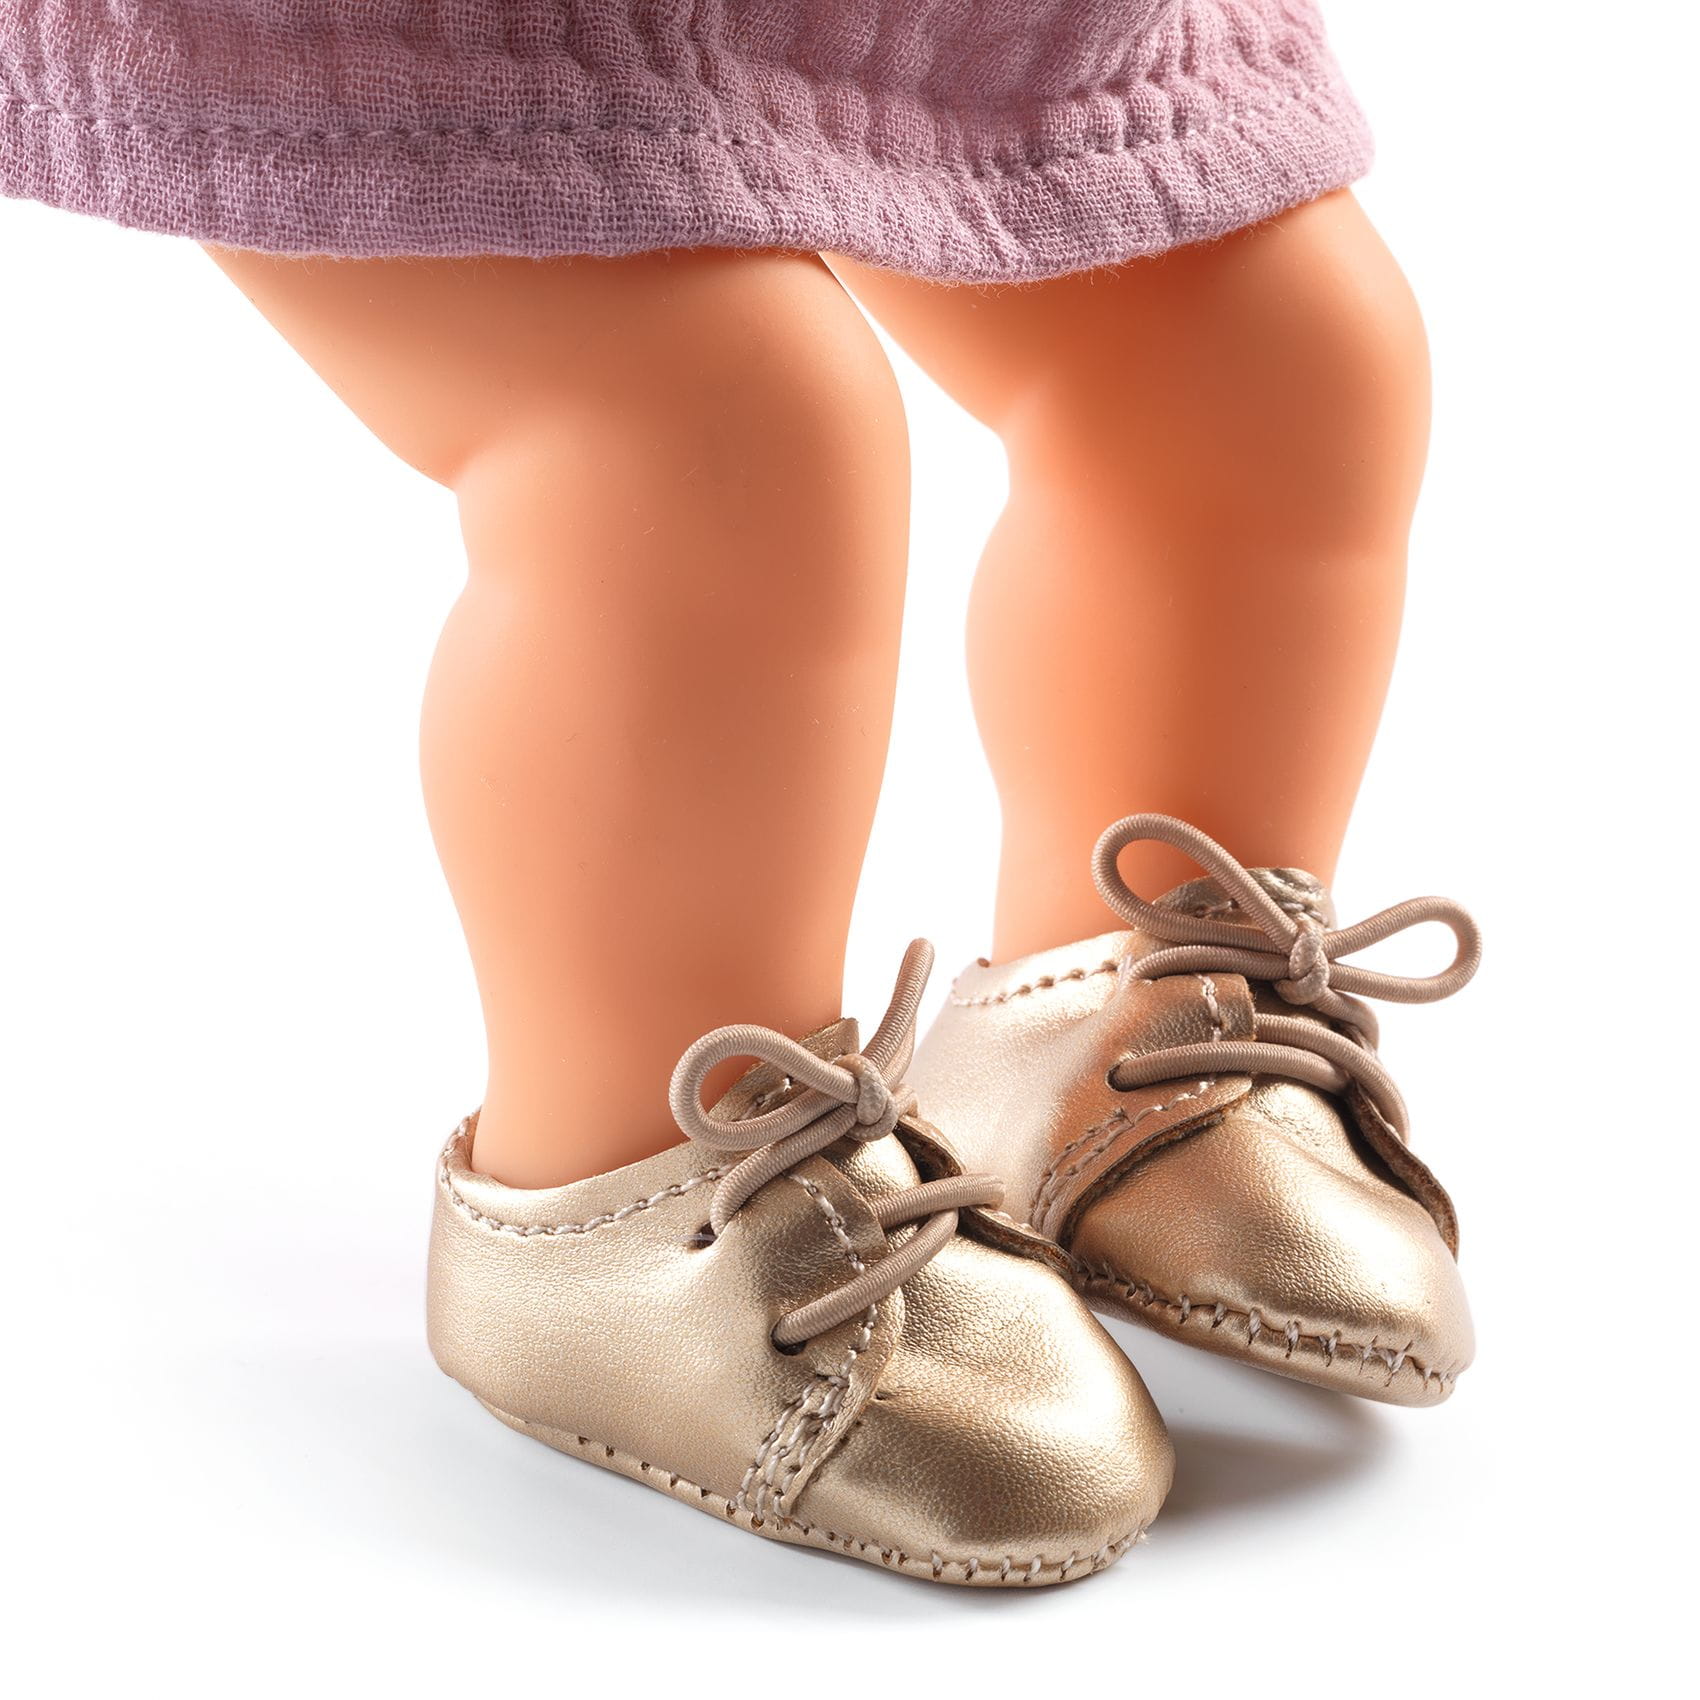 Poma: Chaussures dorées pour les poupées